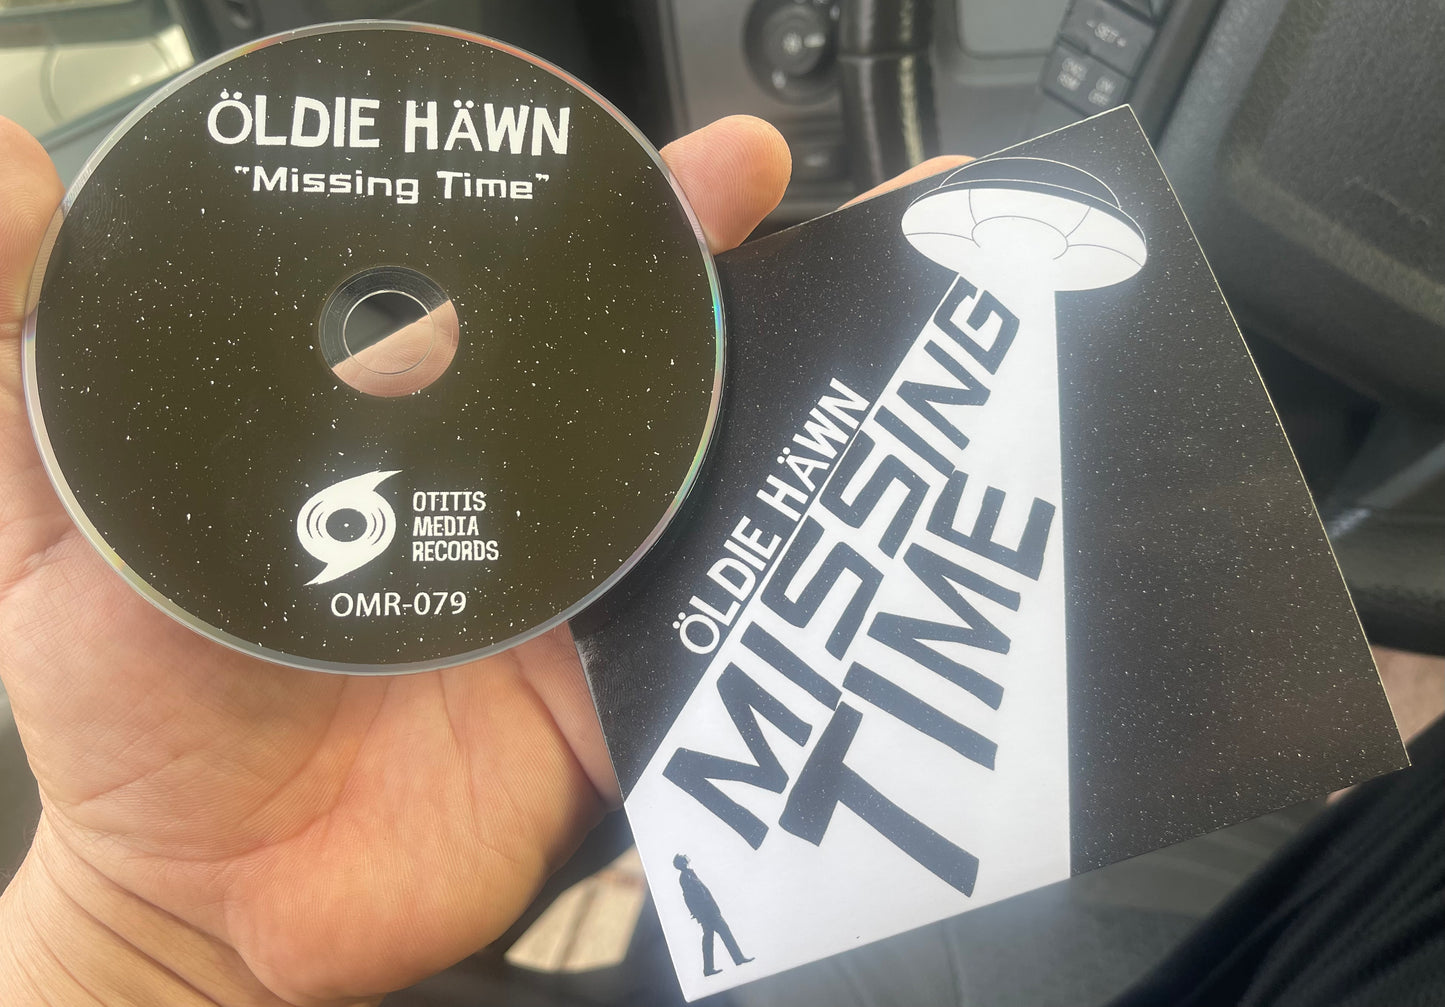 OMR-079 Oldie Hawn “Missing Time” CD/LP